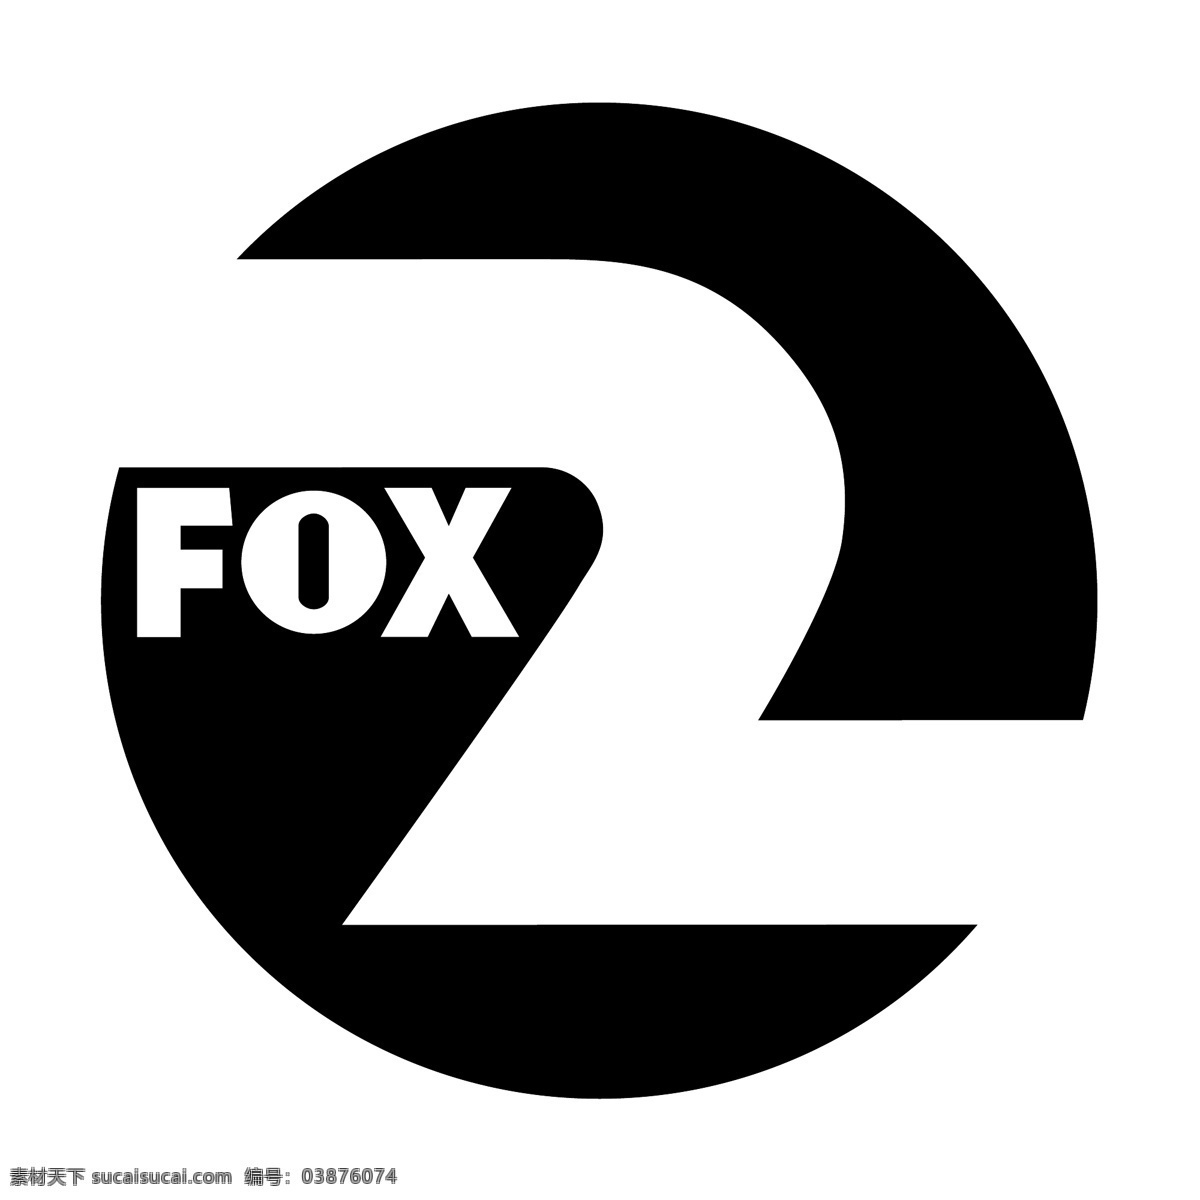 福克斯2 狐狸 免费 矢量 赛车 标识 图形 图标 福克斯 体育 标志 狐狸剪影矢量 艺术 载体 载体狐狸赛跑 建筑家居